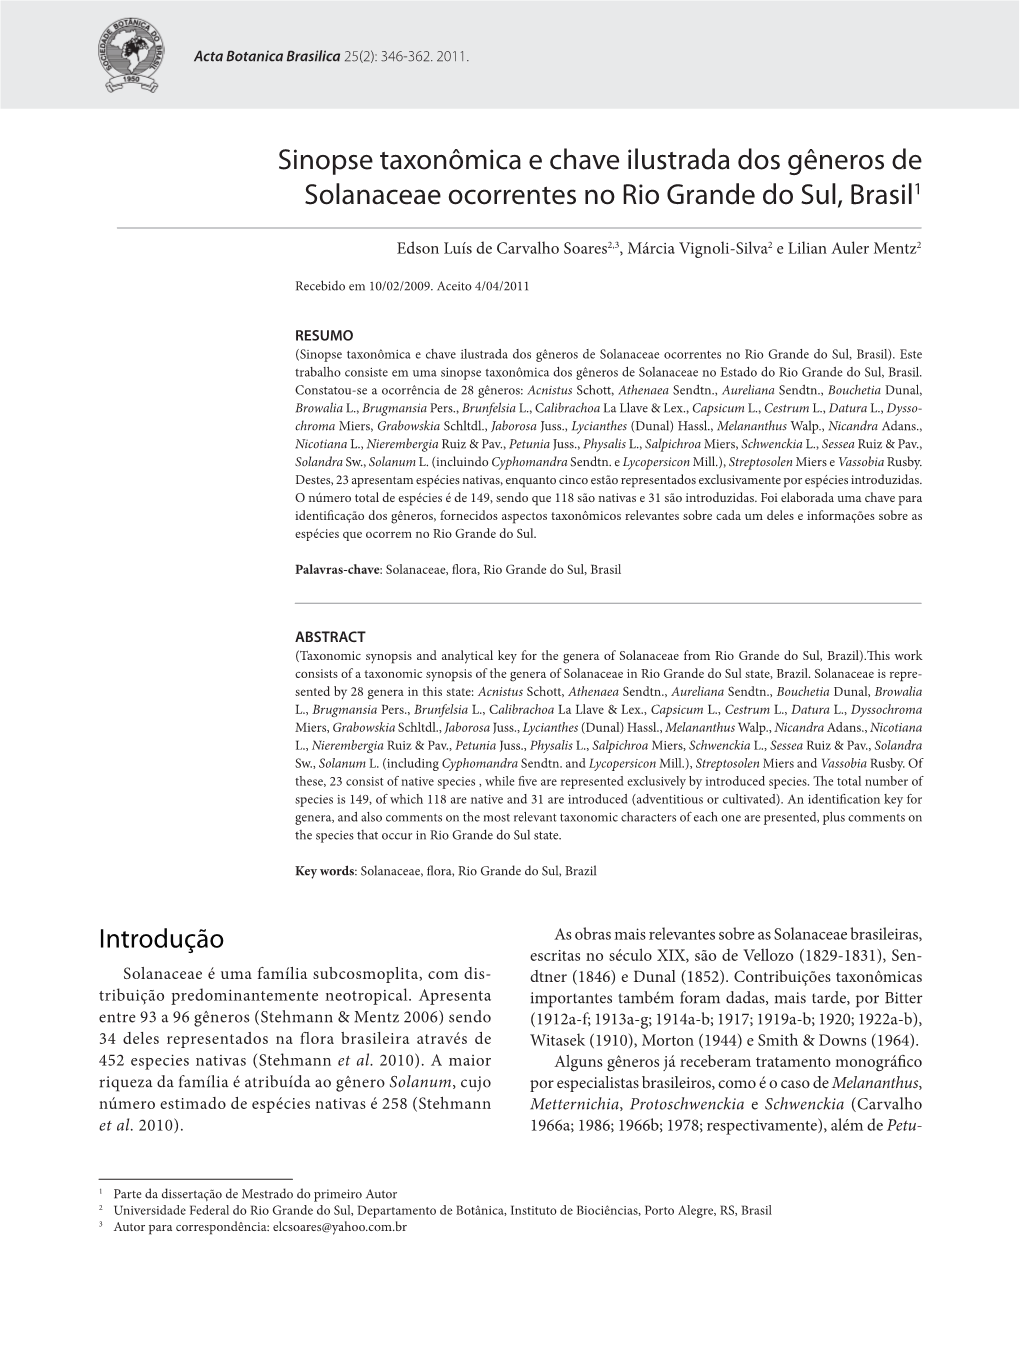 Sinopse Taxonômica E Chave Ilustrada Dos Gêneros De Solanaceae Ocorrentes No Rio Grande Do Sul, Brasil1